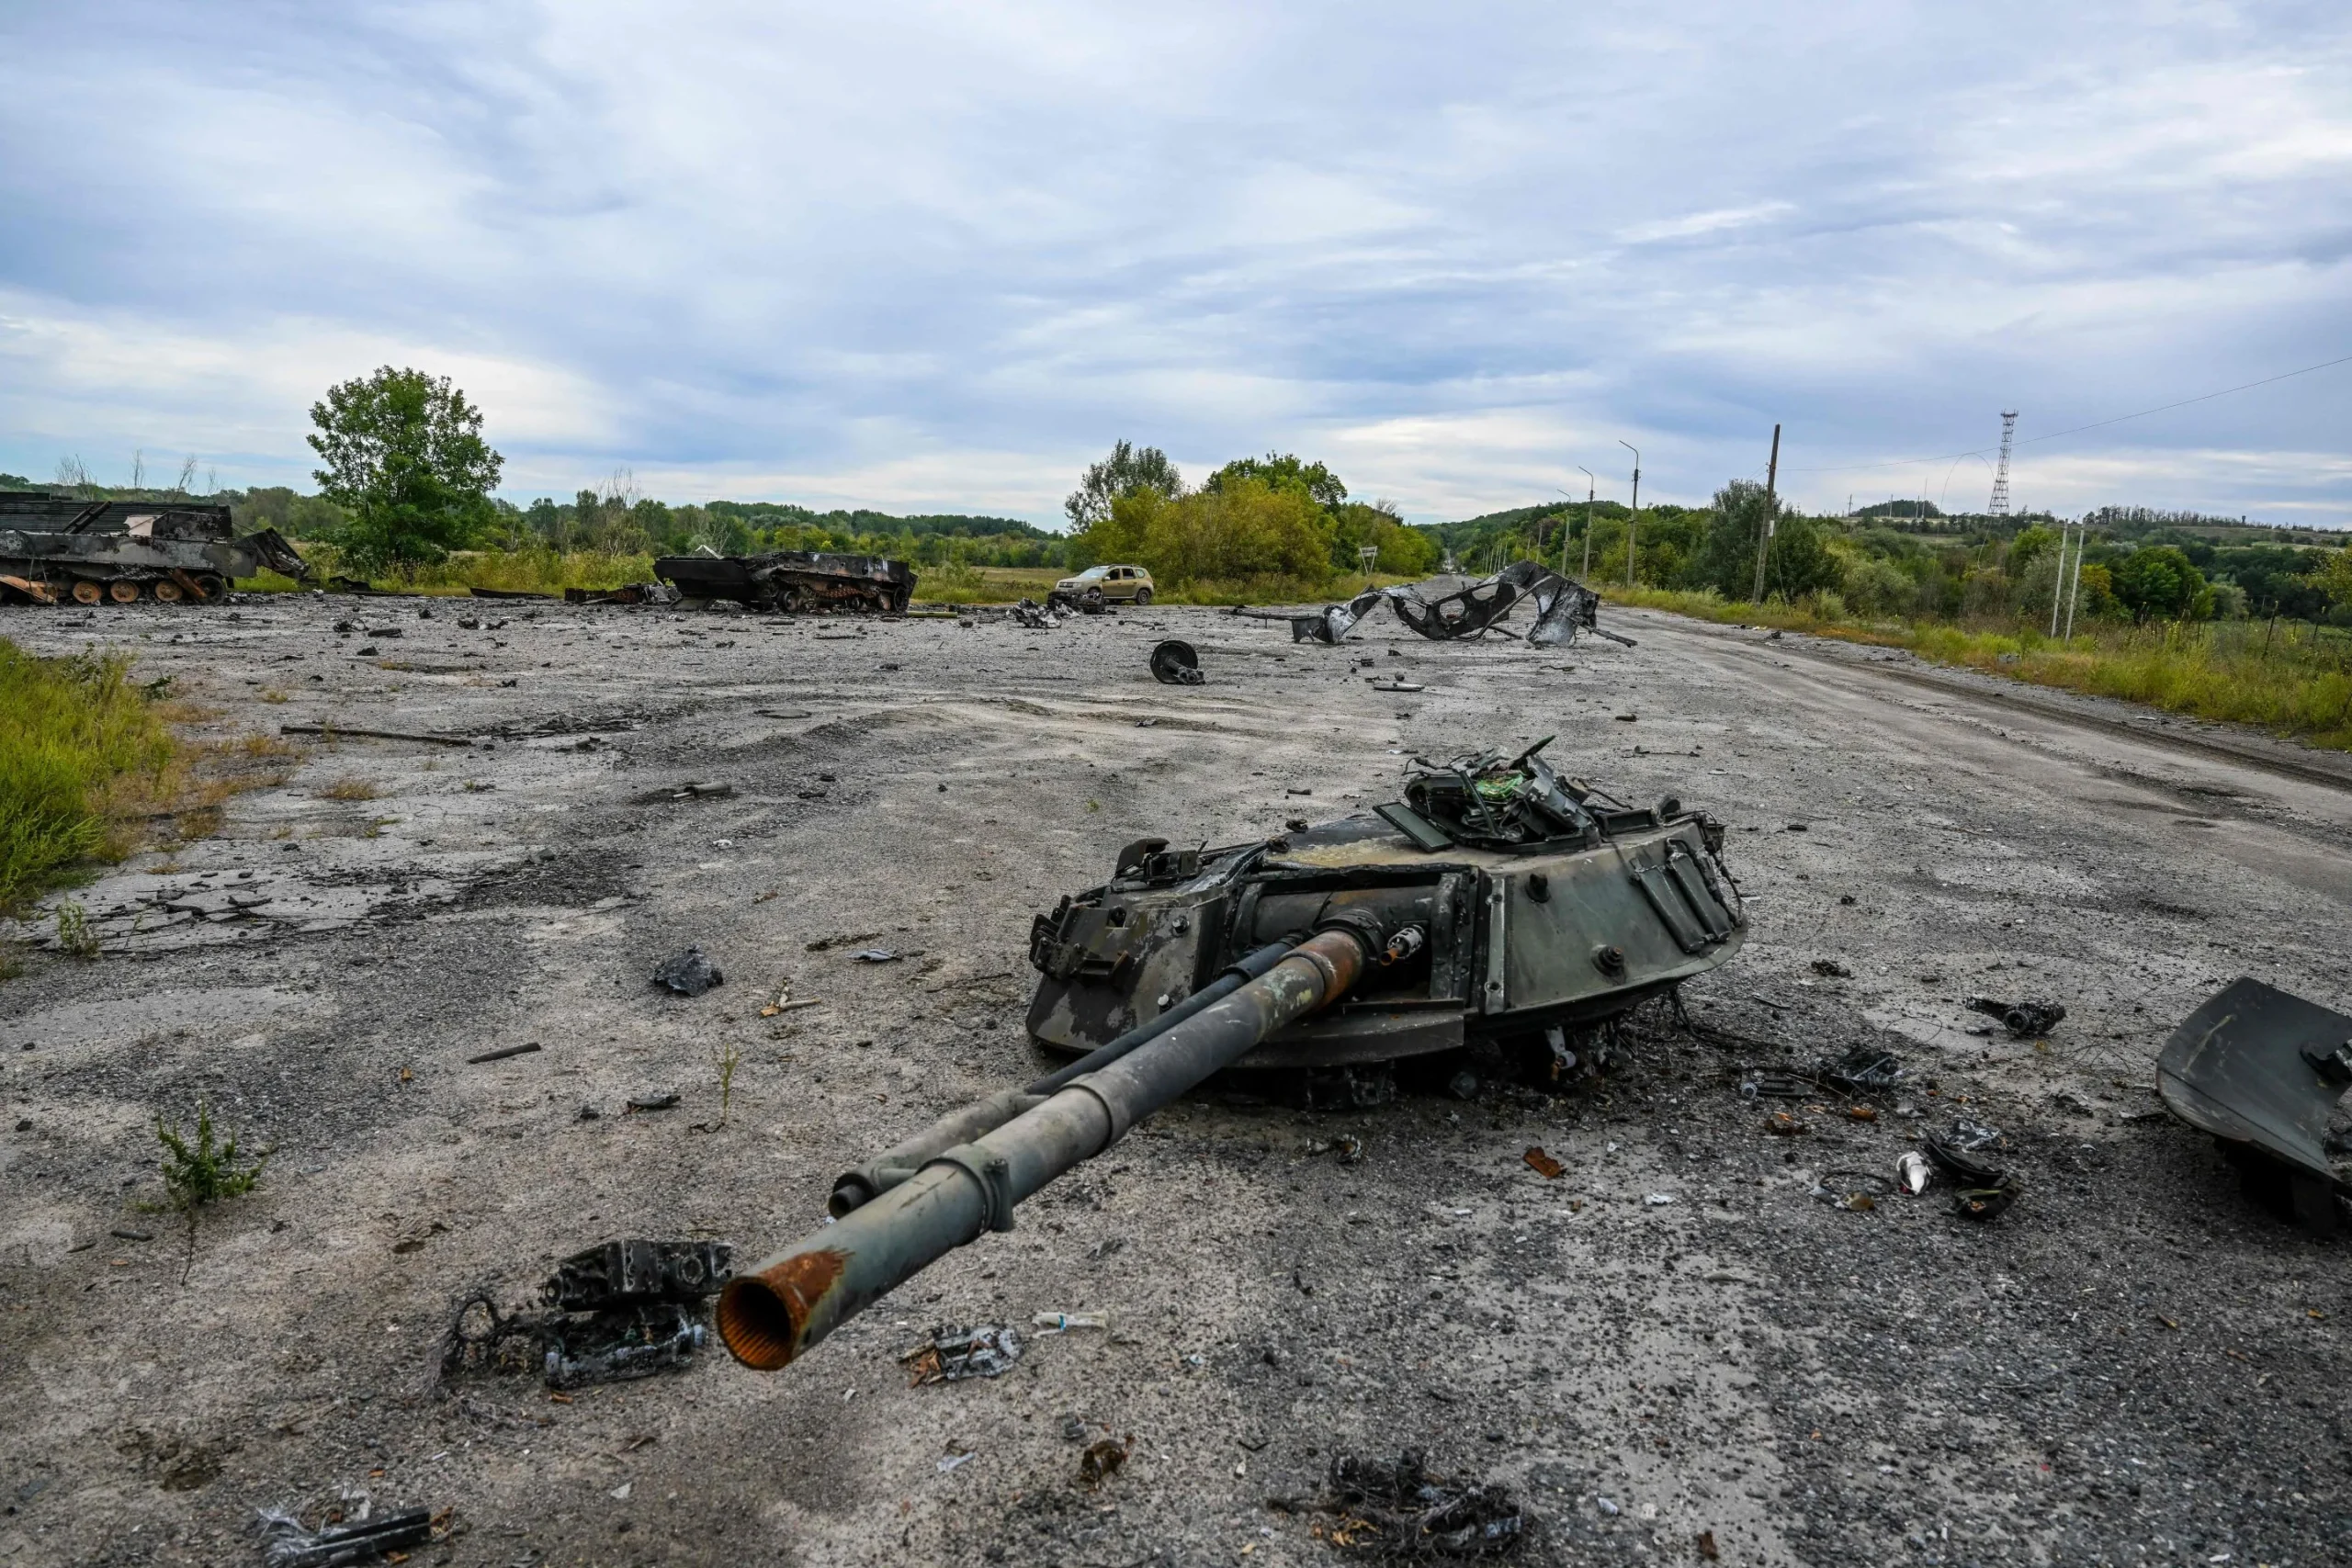 Ντόνετσκ: Πώς κατέγραψε αποτυχημένη επίθεση των Ουκρανών ρωσικό drone